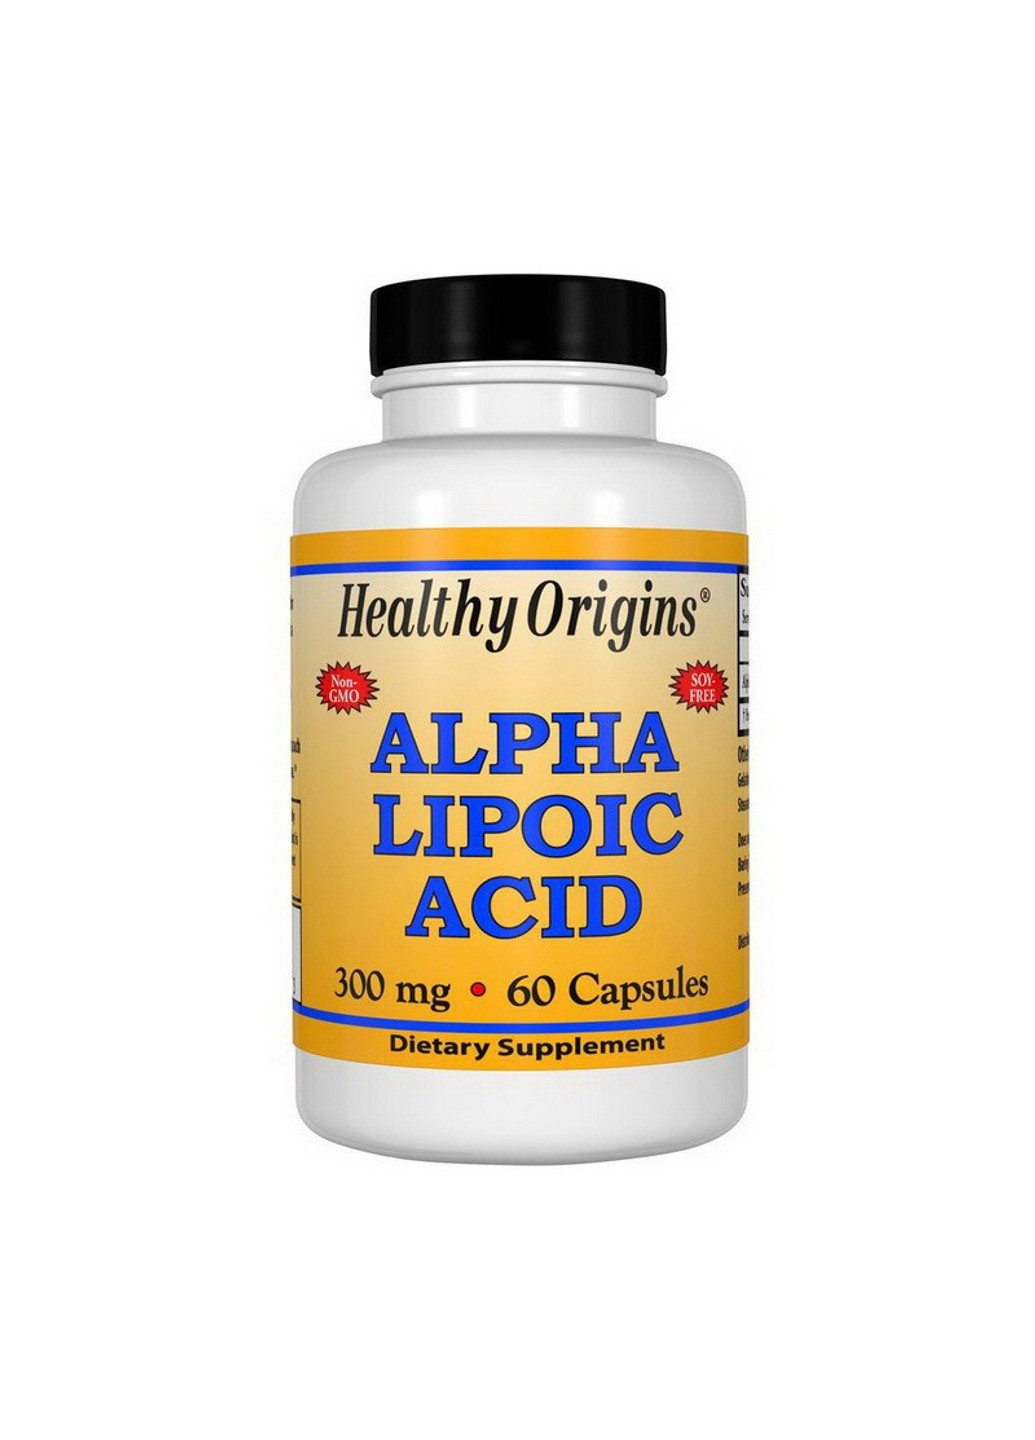 Альфа-липоевая кислота Alpha Lipoic Acid 300 mg (60 капсул) хелси ориджинс Healthy Origins (255408907)